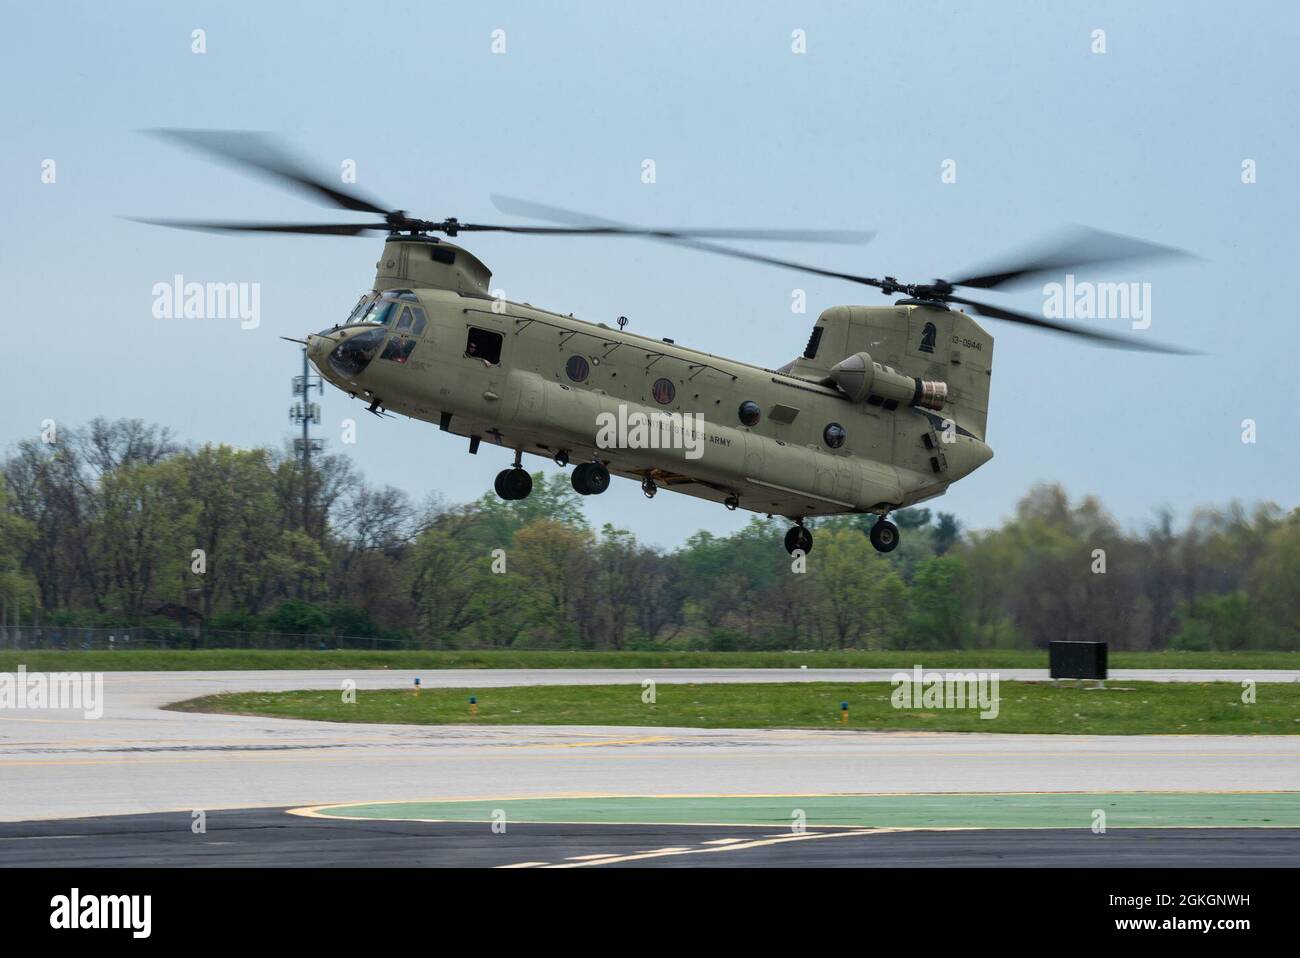 Ein Hubschrauber der US Army CH-47 Chinook führt eine Luftdemonstration über dem Bowman Field in Louisville, Ky., 17. April 2021, im Rahmen der Flugshow Thunder over Louisville durch. Bei der jährlichen Veranstaltung wurden in diesem Jahr mehr als 20 militärische und zivile Luftfahrzeuge vorgestellt. Stockfoto